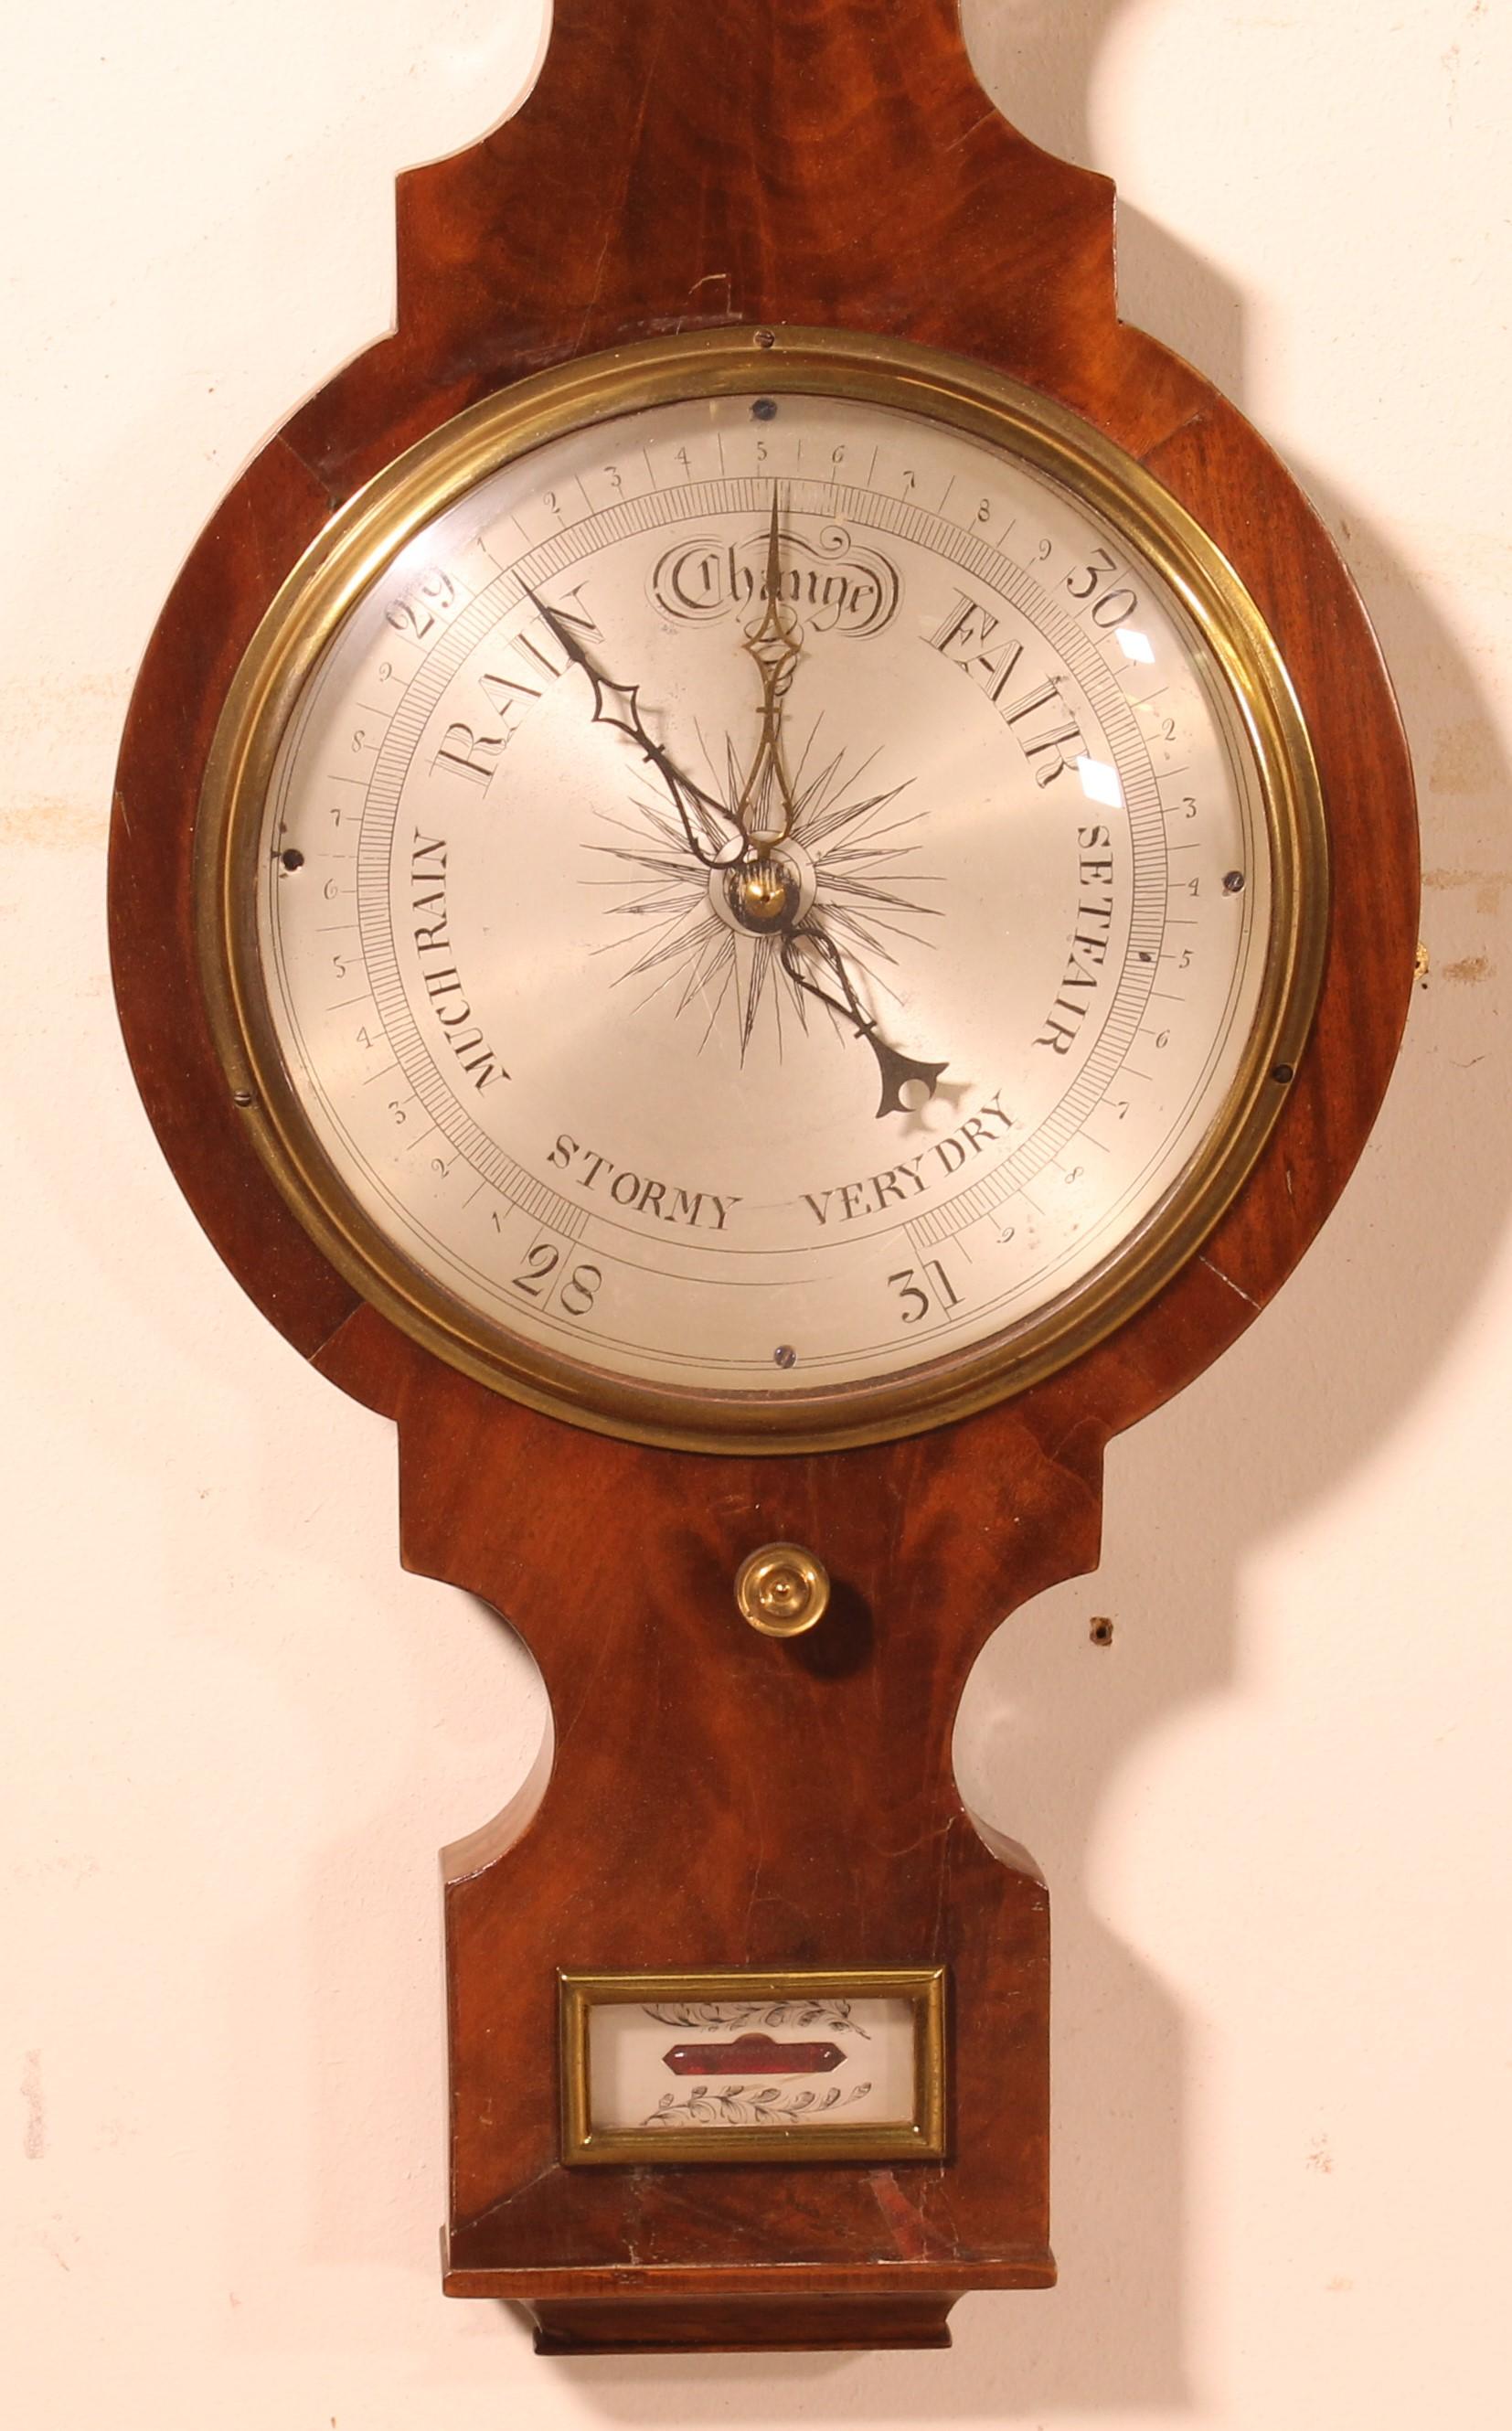 Baromètre en noyer du 19ème siècle provenant d'Angleterre

Le thermomètre fonctionne et le mécanisme du baromètre est présent.

En superbe état et très belle patine.